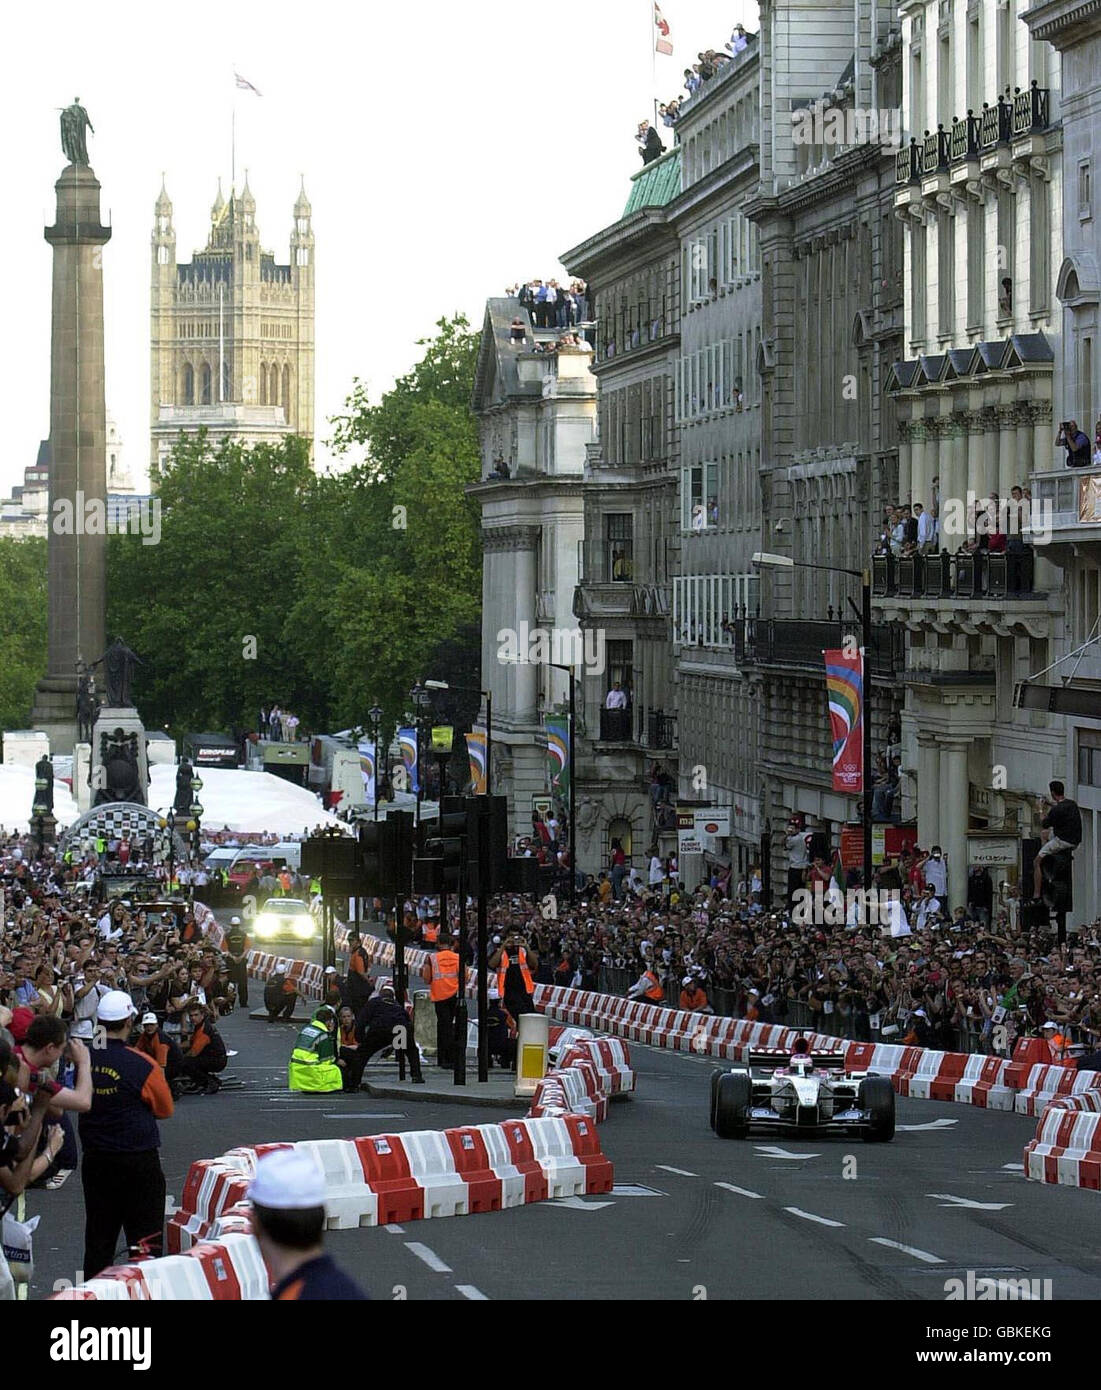 Jenson Button, pilote de course britannique, dans un BAR Honda, remonte Regent Street, Londres, alors que la Formule 1 arrive dans la capitale. Des milliers de fans de Formule 1 se sont rassemblés pour l'événement de courses automobiles de rue sans précédent, alors que des appels à un Grand Prix permanent y ont été lancés. Les meilleurs pilotes, anciens et nouveaux, sont arrivés pour l'événement du centre de Londres de cette soirée pour voir les puissantes voitures conduire le long du parcours de 3 km de Regent Street. La légende britannique Nigel Mansell et le Scot David Coulthard ont également été parmi les participants de huit équipes de Formule 1, dont Ferrari et Williams, pour participer à une procession le long de la route. Banque D'Images